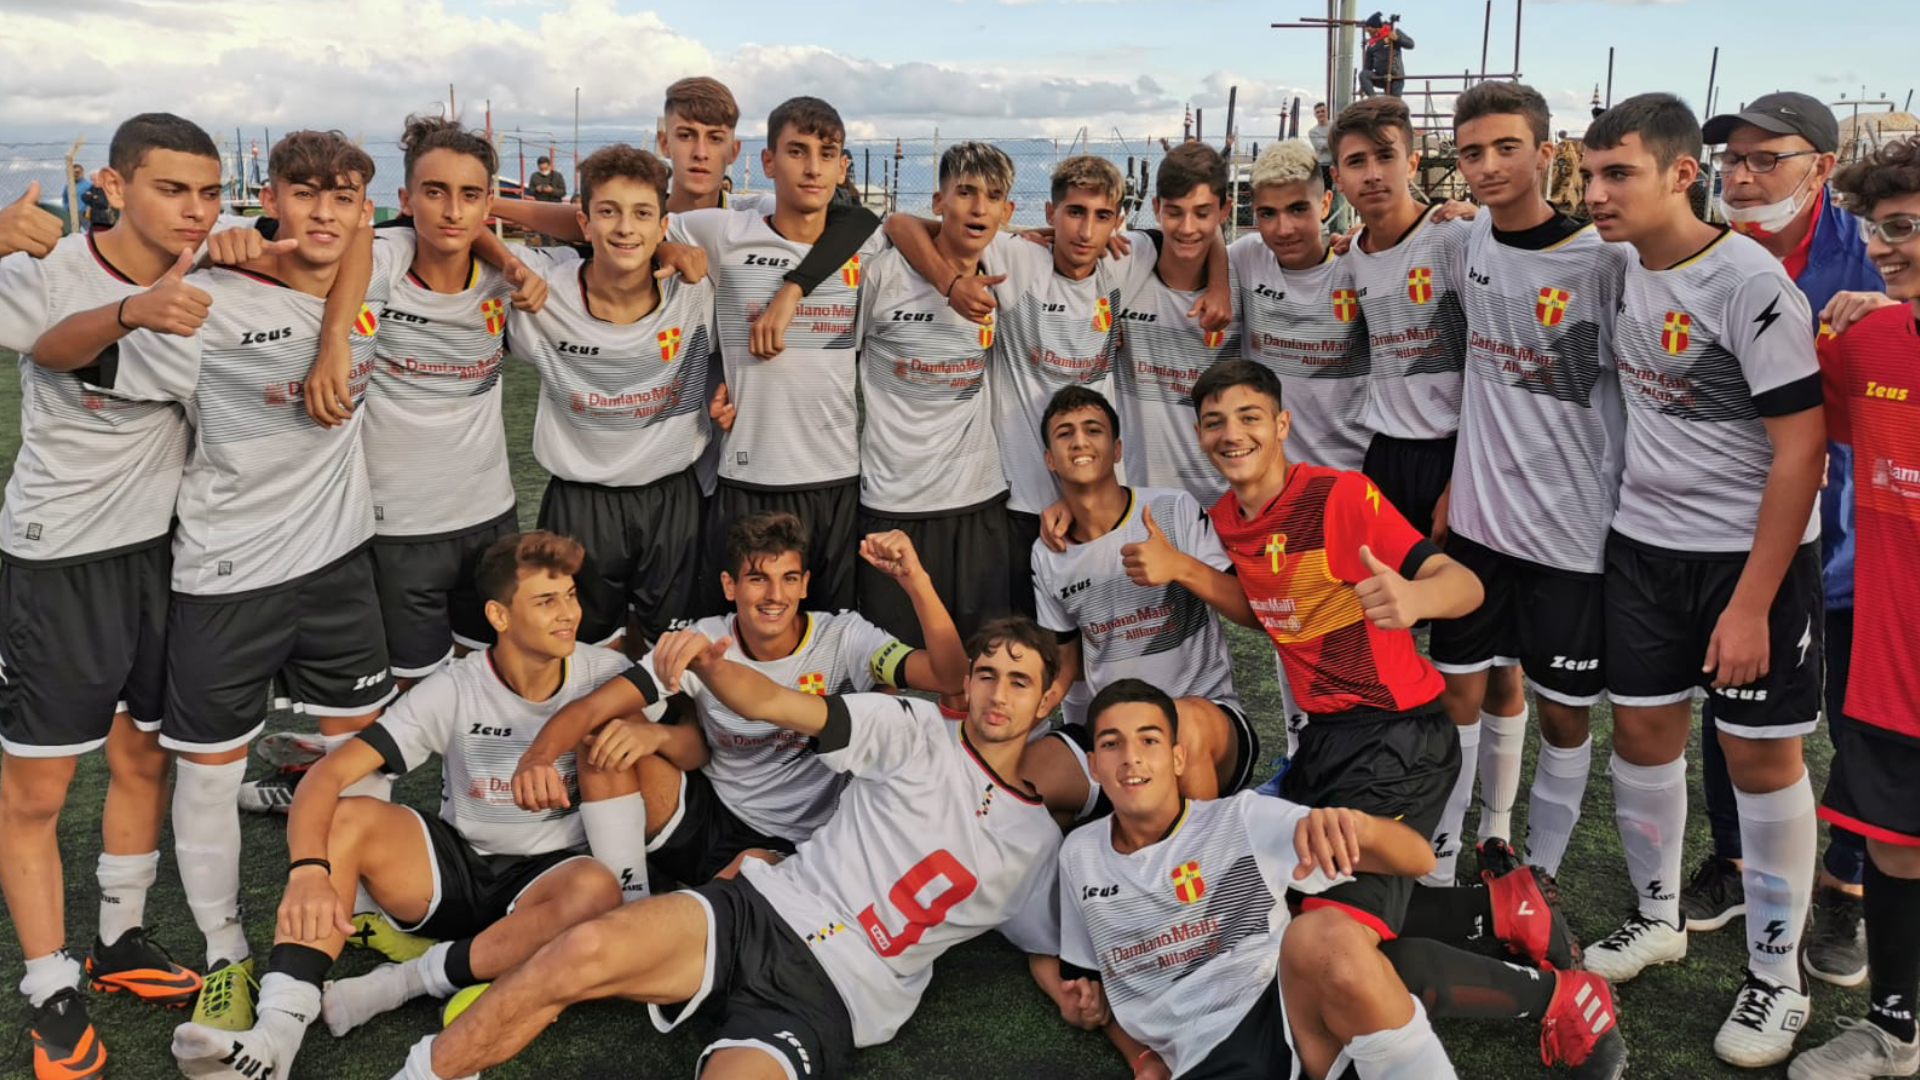 CALCIO GIOVANILE – FC Messina AcadeMY: sospese attività giovanili e scuola calcio